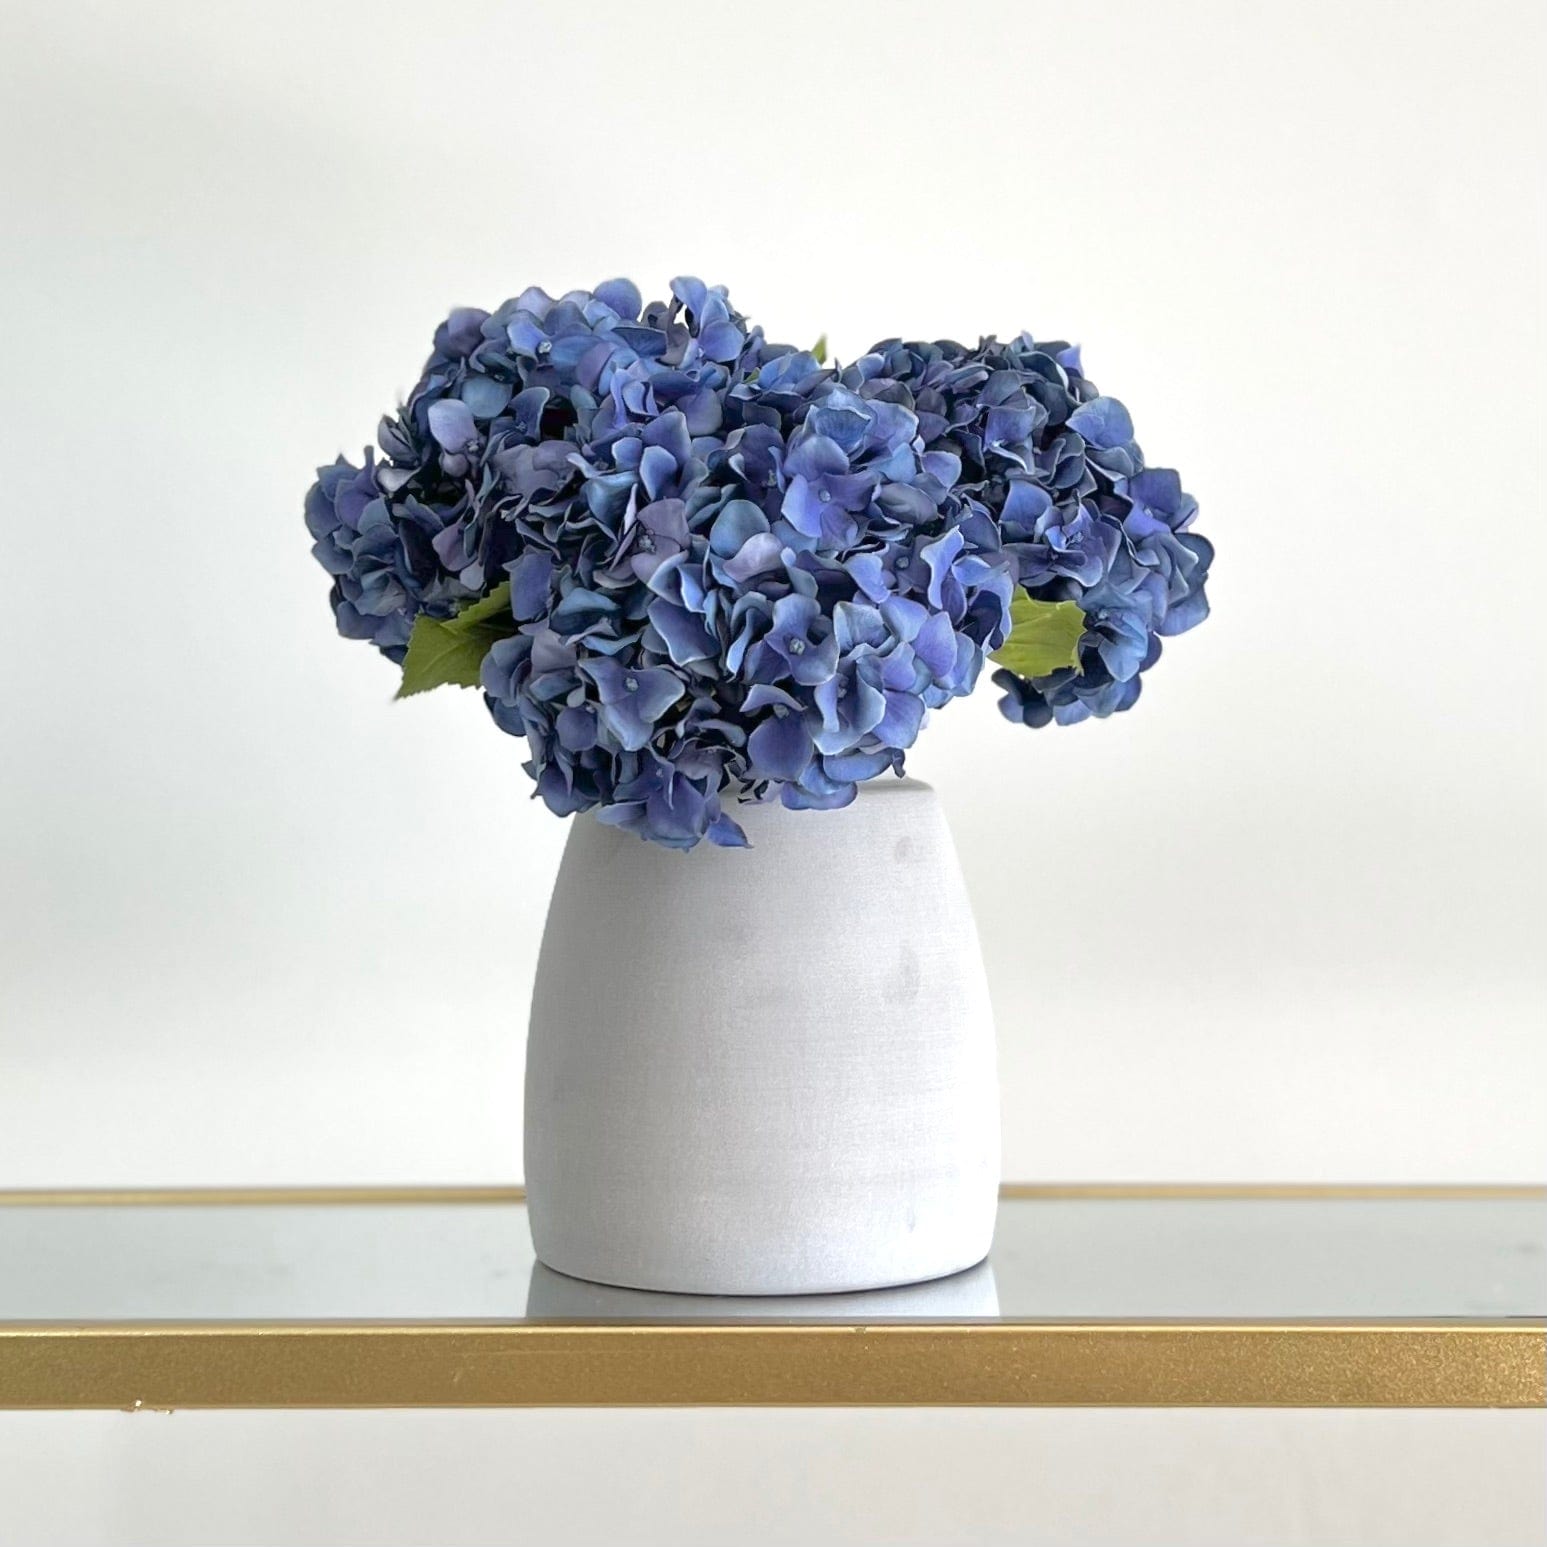 Artificial flowers luxury faux silk blue dried hydrangeas in kemble pot vase lifelike realistic faux flowers ABP1766 ABY5070BL